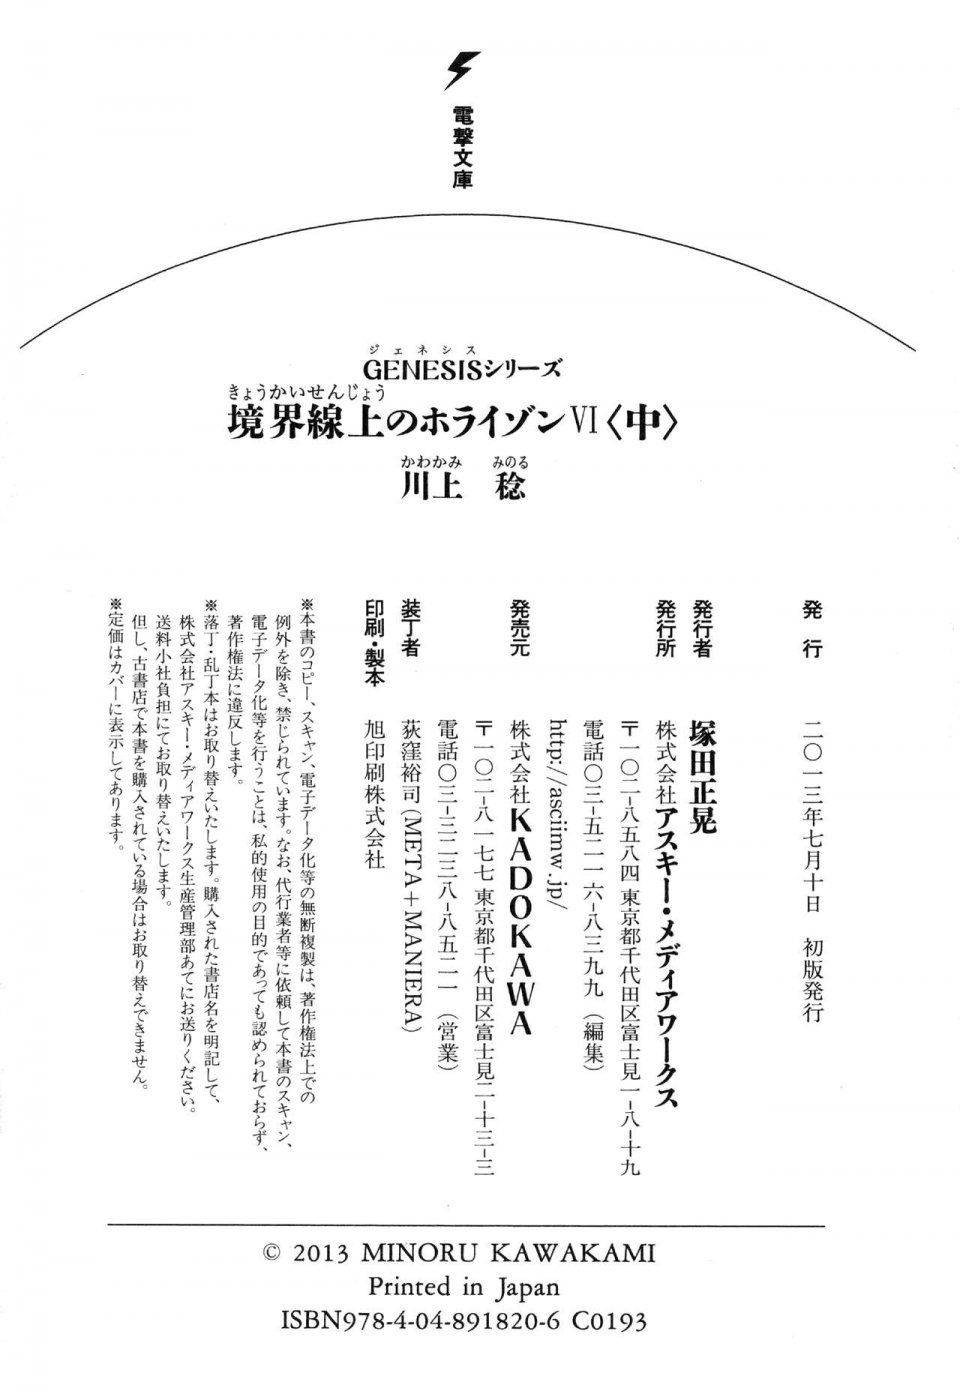 Kyoukai Senjou no Horizon LN Vol 14(6B) - Photo #838